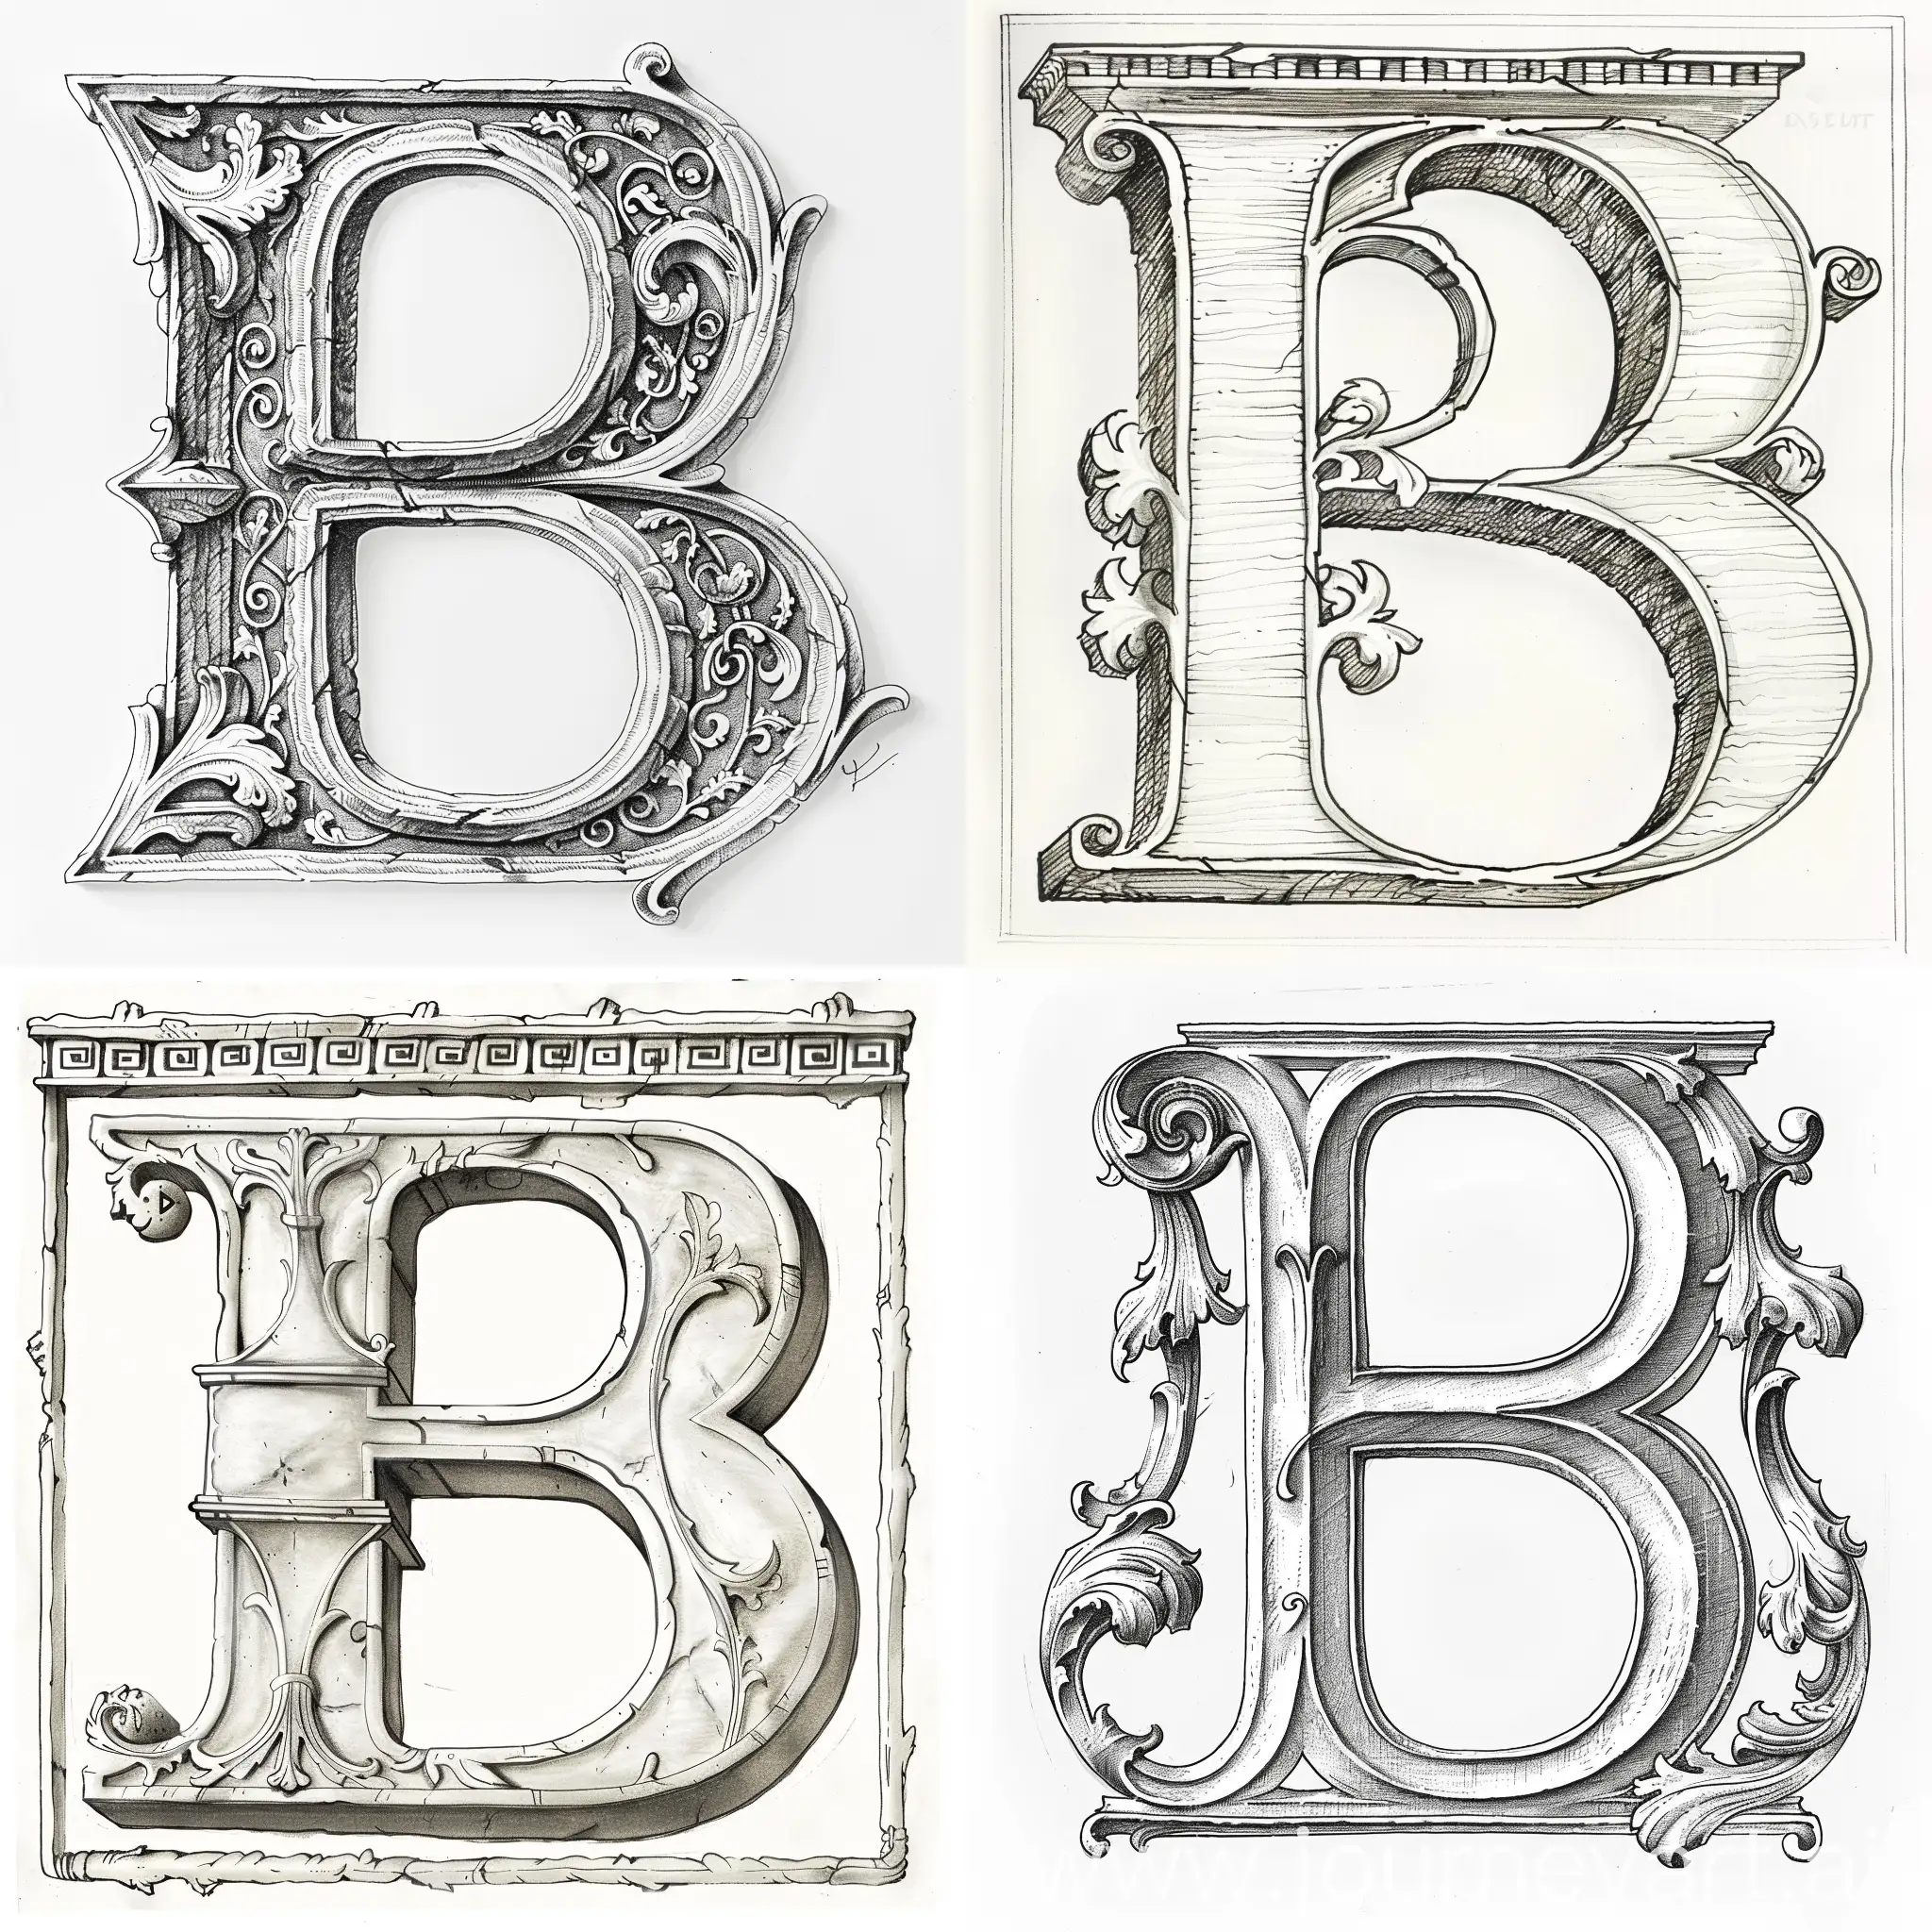 Нарисуй букву "B" заглавную, в стиле средневековья, белого цвета. 
